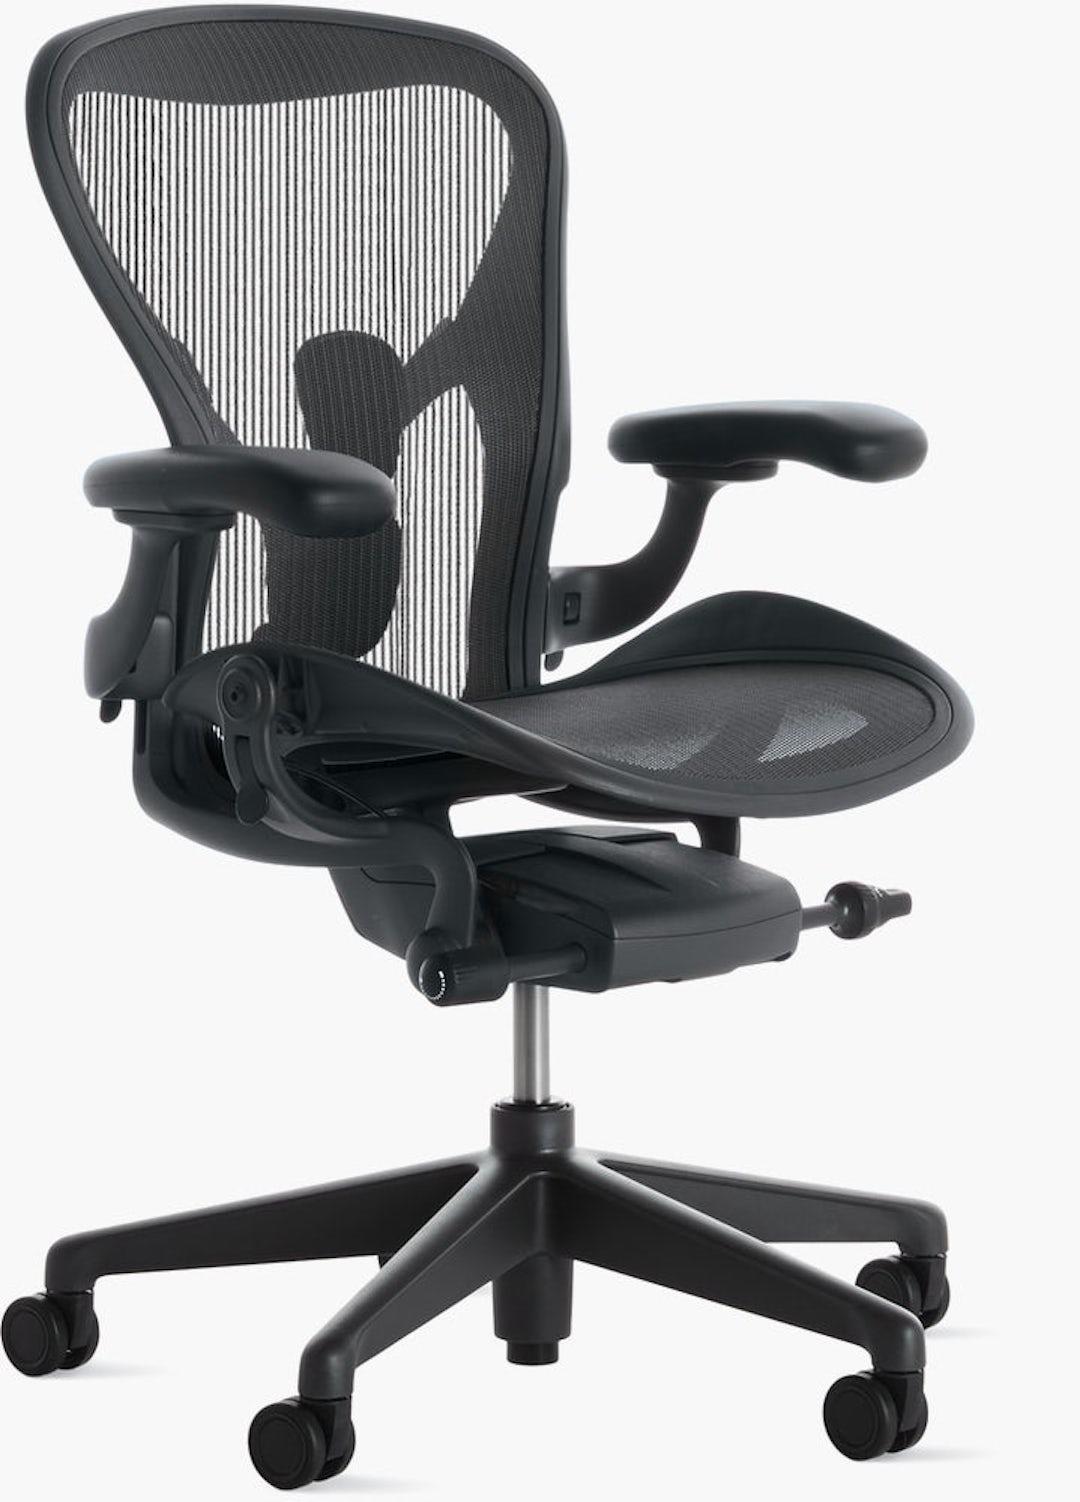 Herman Miller Aeron chair